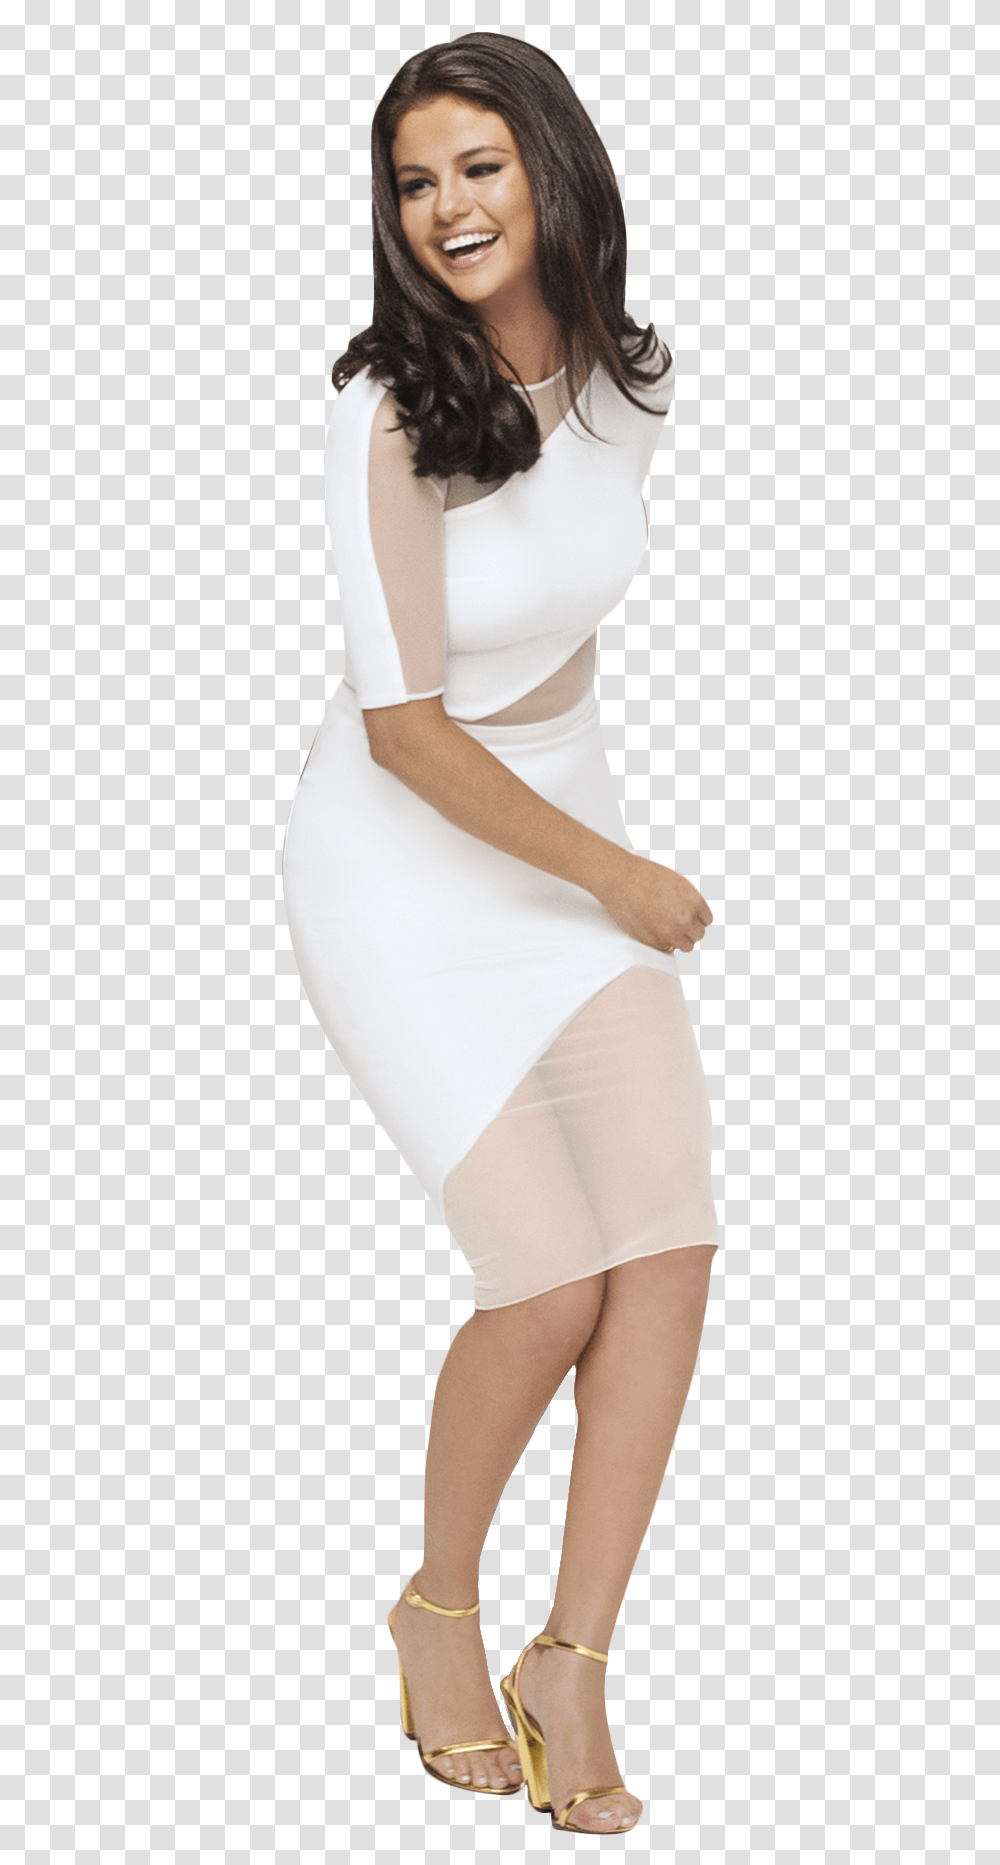 Selena Gomez White Dress Image Photo Shoot, Person, Underwear, Lingerie Transparent Png